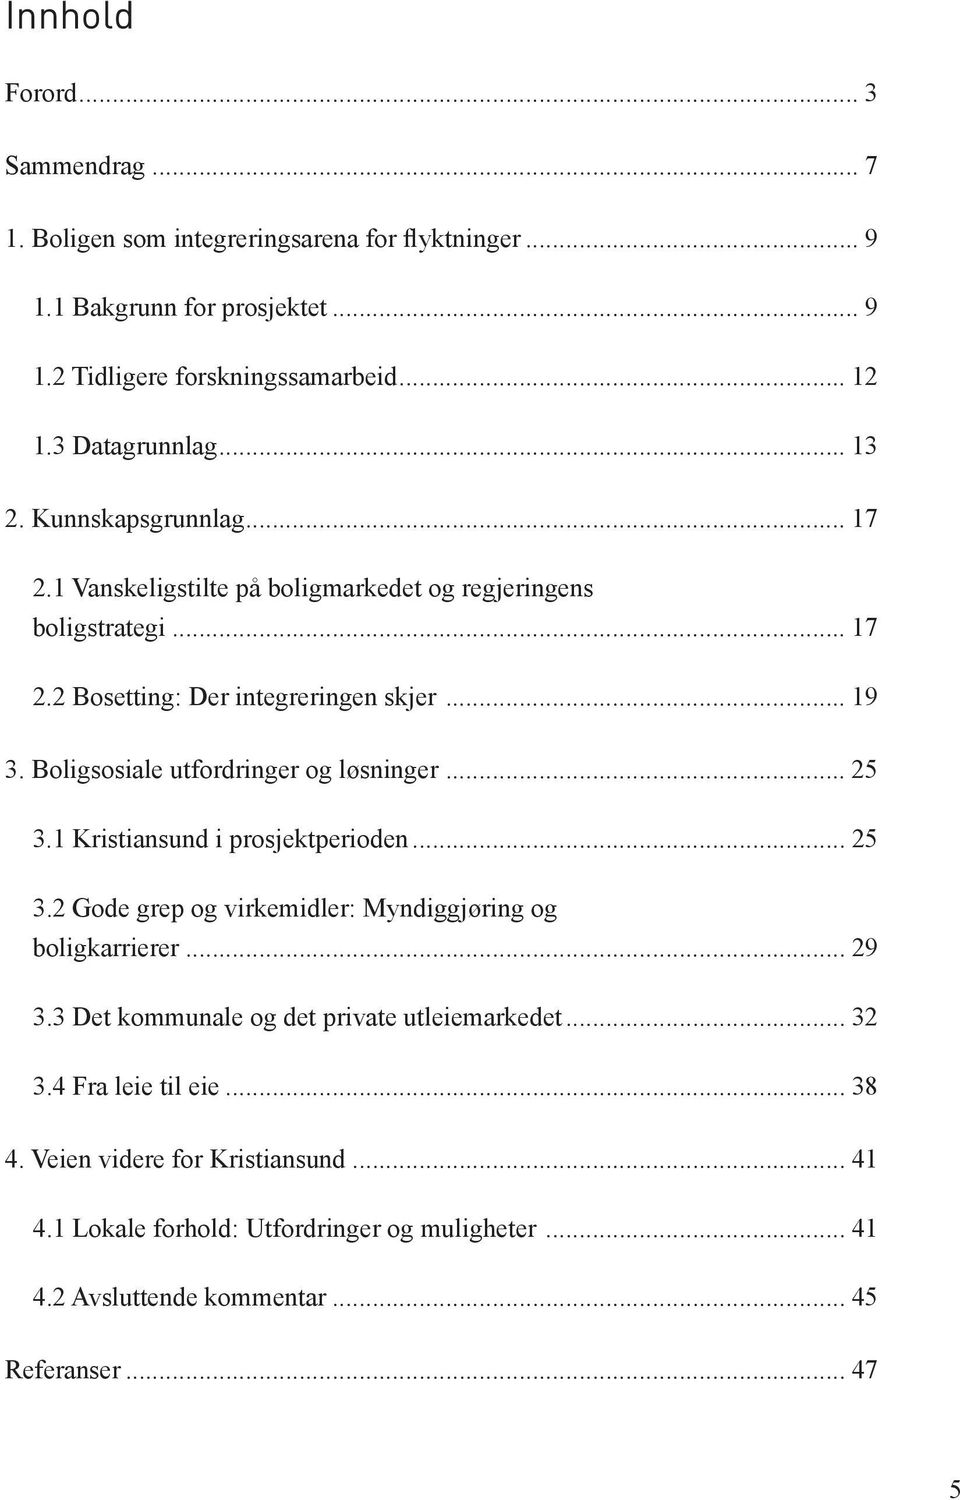 Boligsosiale utfordringer og løsninger... 25 3.1 Kristiansund i prosjektperioden... 25 3.2 Gode grep og virkemidler: Myndiggjøring og boligkarrierer... 29 3.